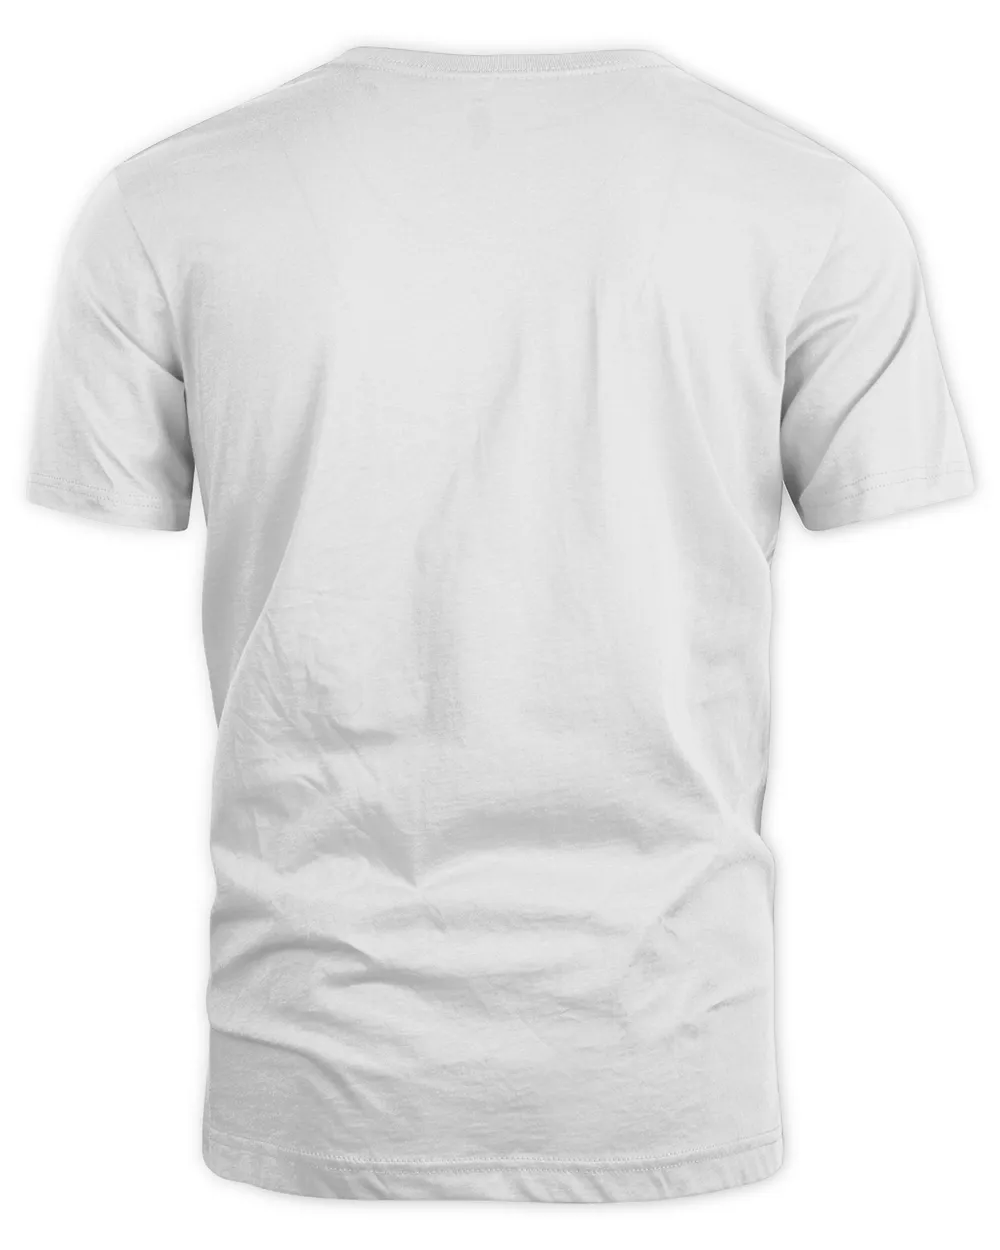 RD UTV Gift - Got Dirt  Funny SxS SSV Gift Long Sleeve Shirt